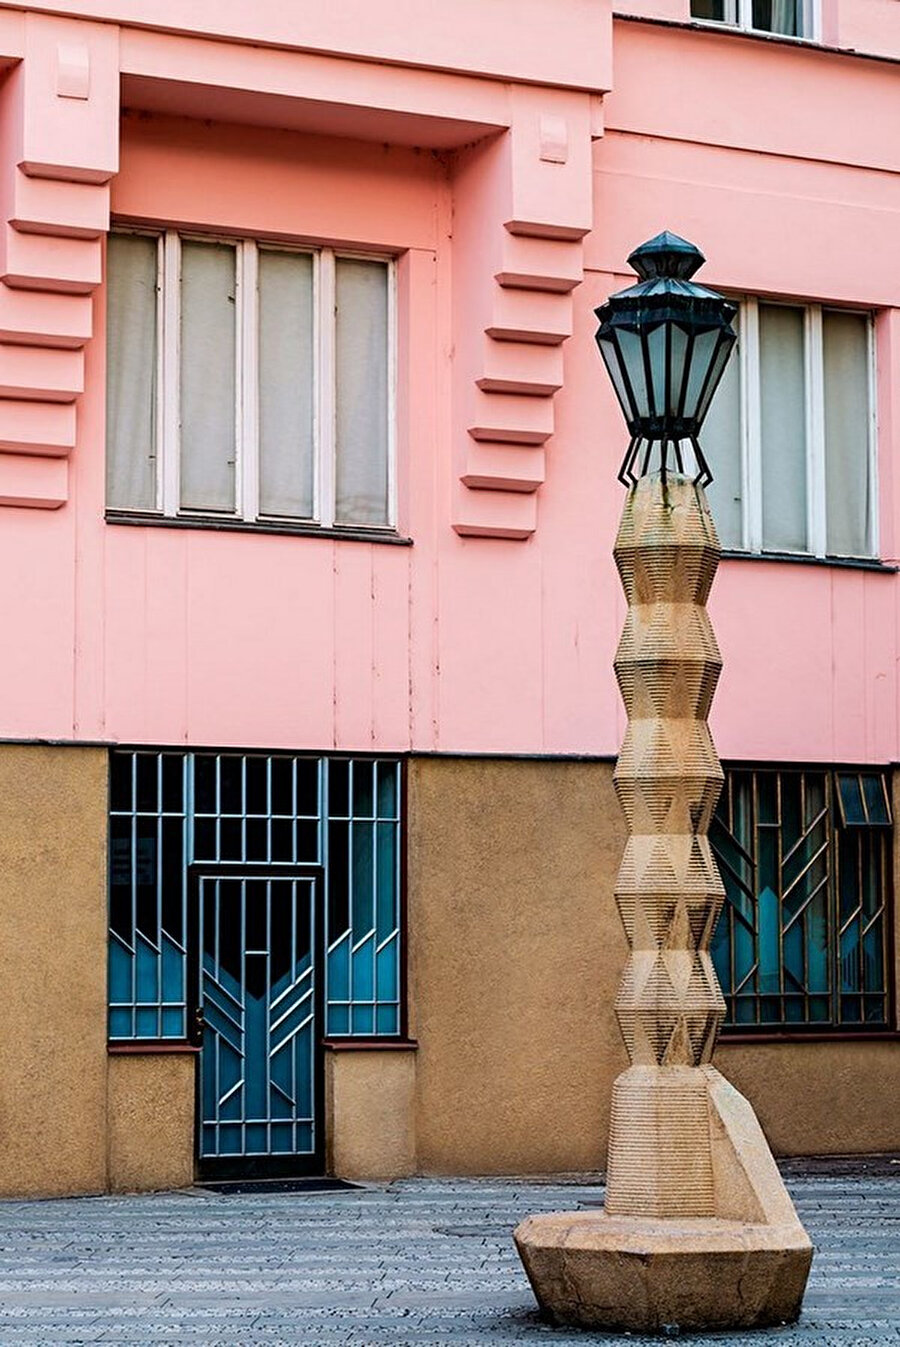 Kübist sokak lambası, çevre binalarla benzer renk ve materyallerden meydana geliyor.